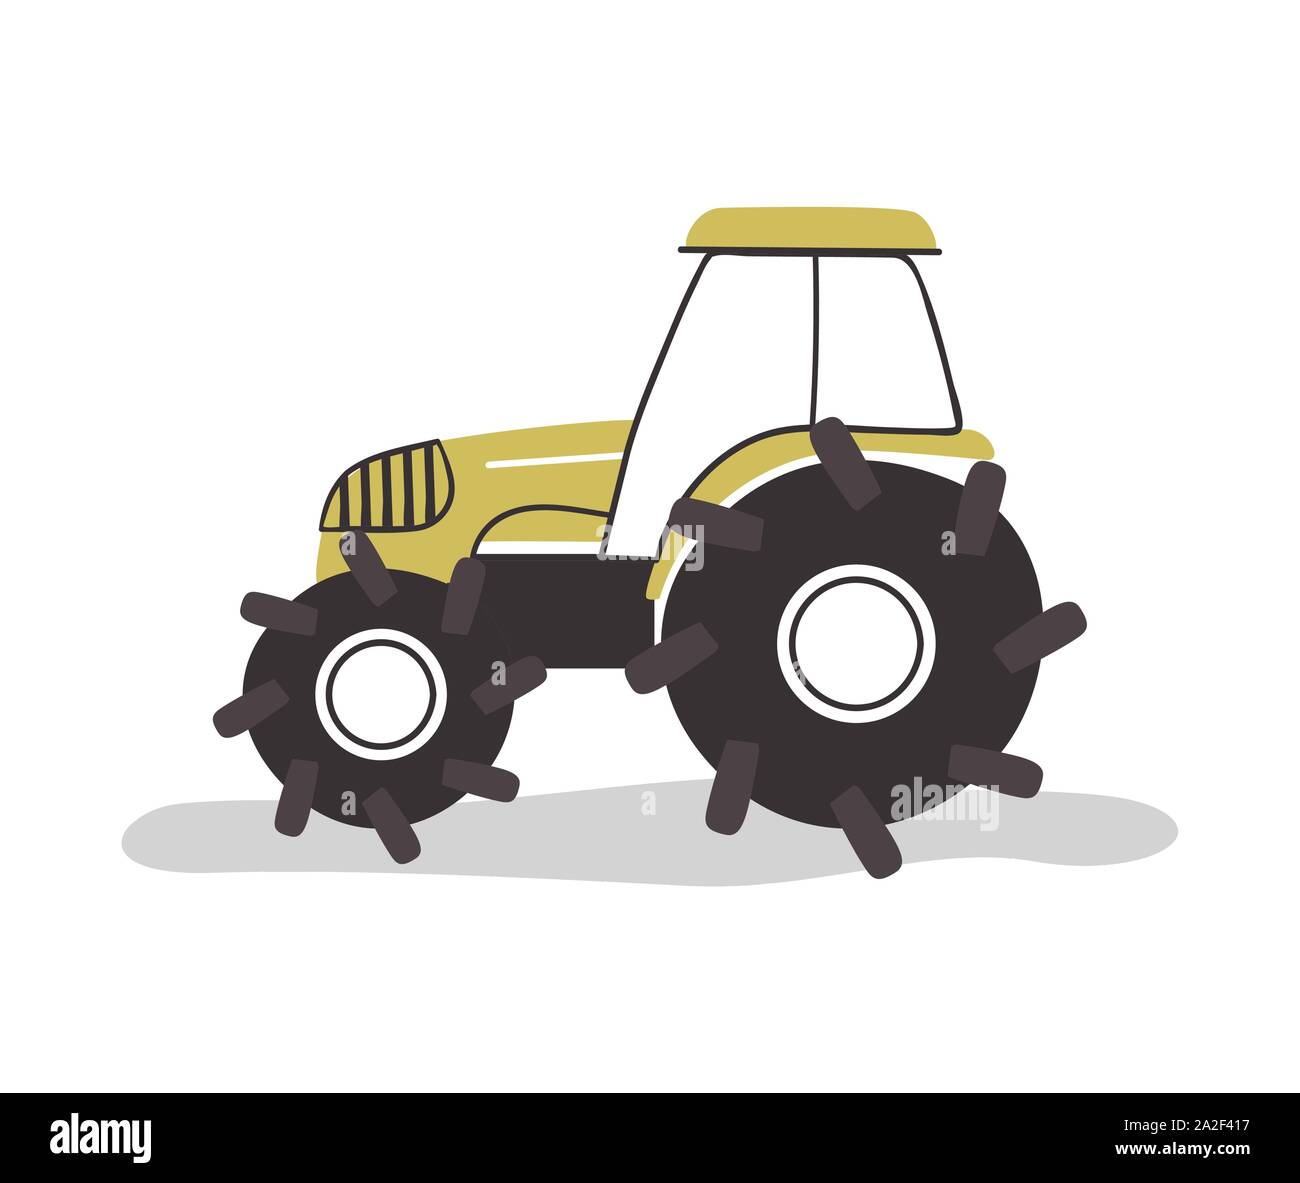 Farm Traktor Fahrzeug auf isolierten weißen Hintergrund. Moderne Wohnung Cartoon Stil Landwirtschaft Industrie Transport. Stock Vektor